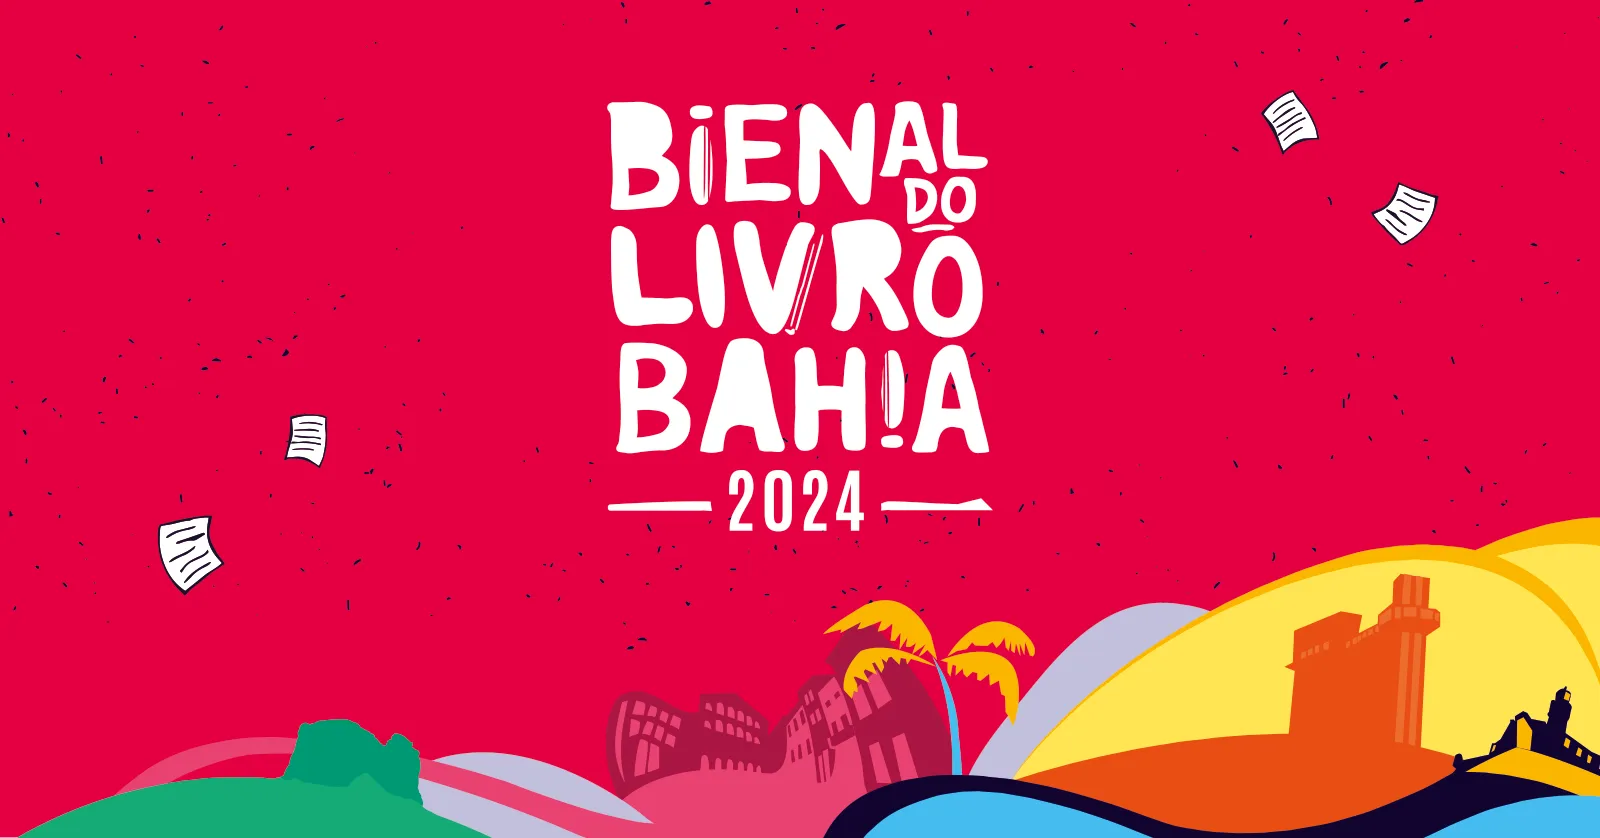 
		Bienal do Livro Bahia 2024: Um (Re)Encontro Literário